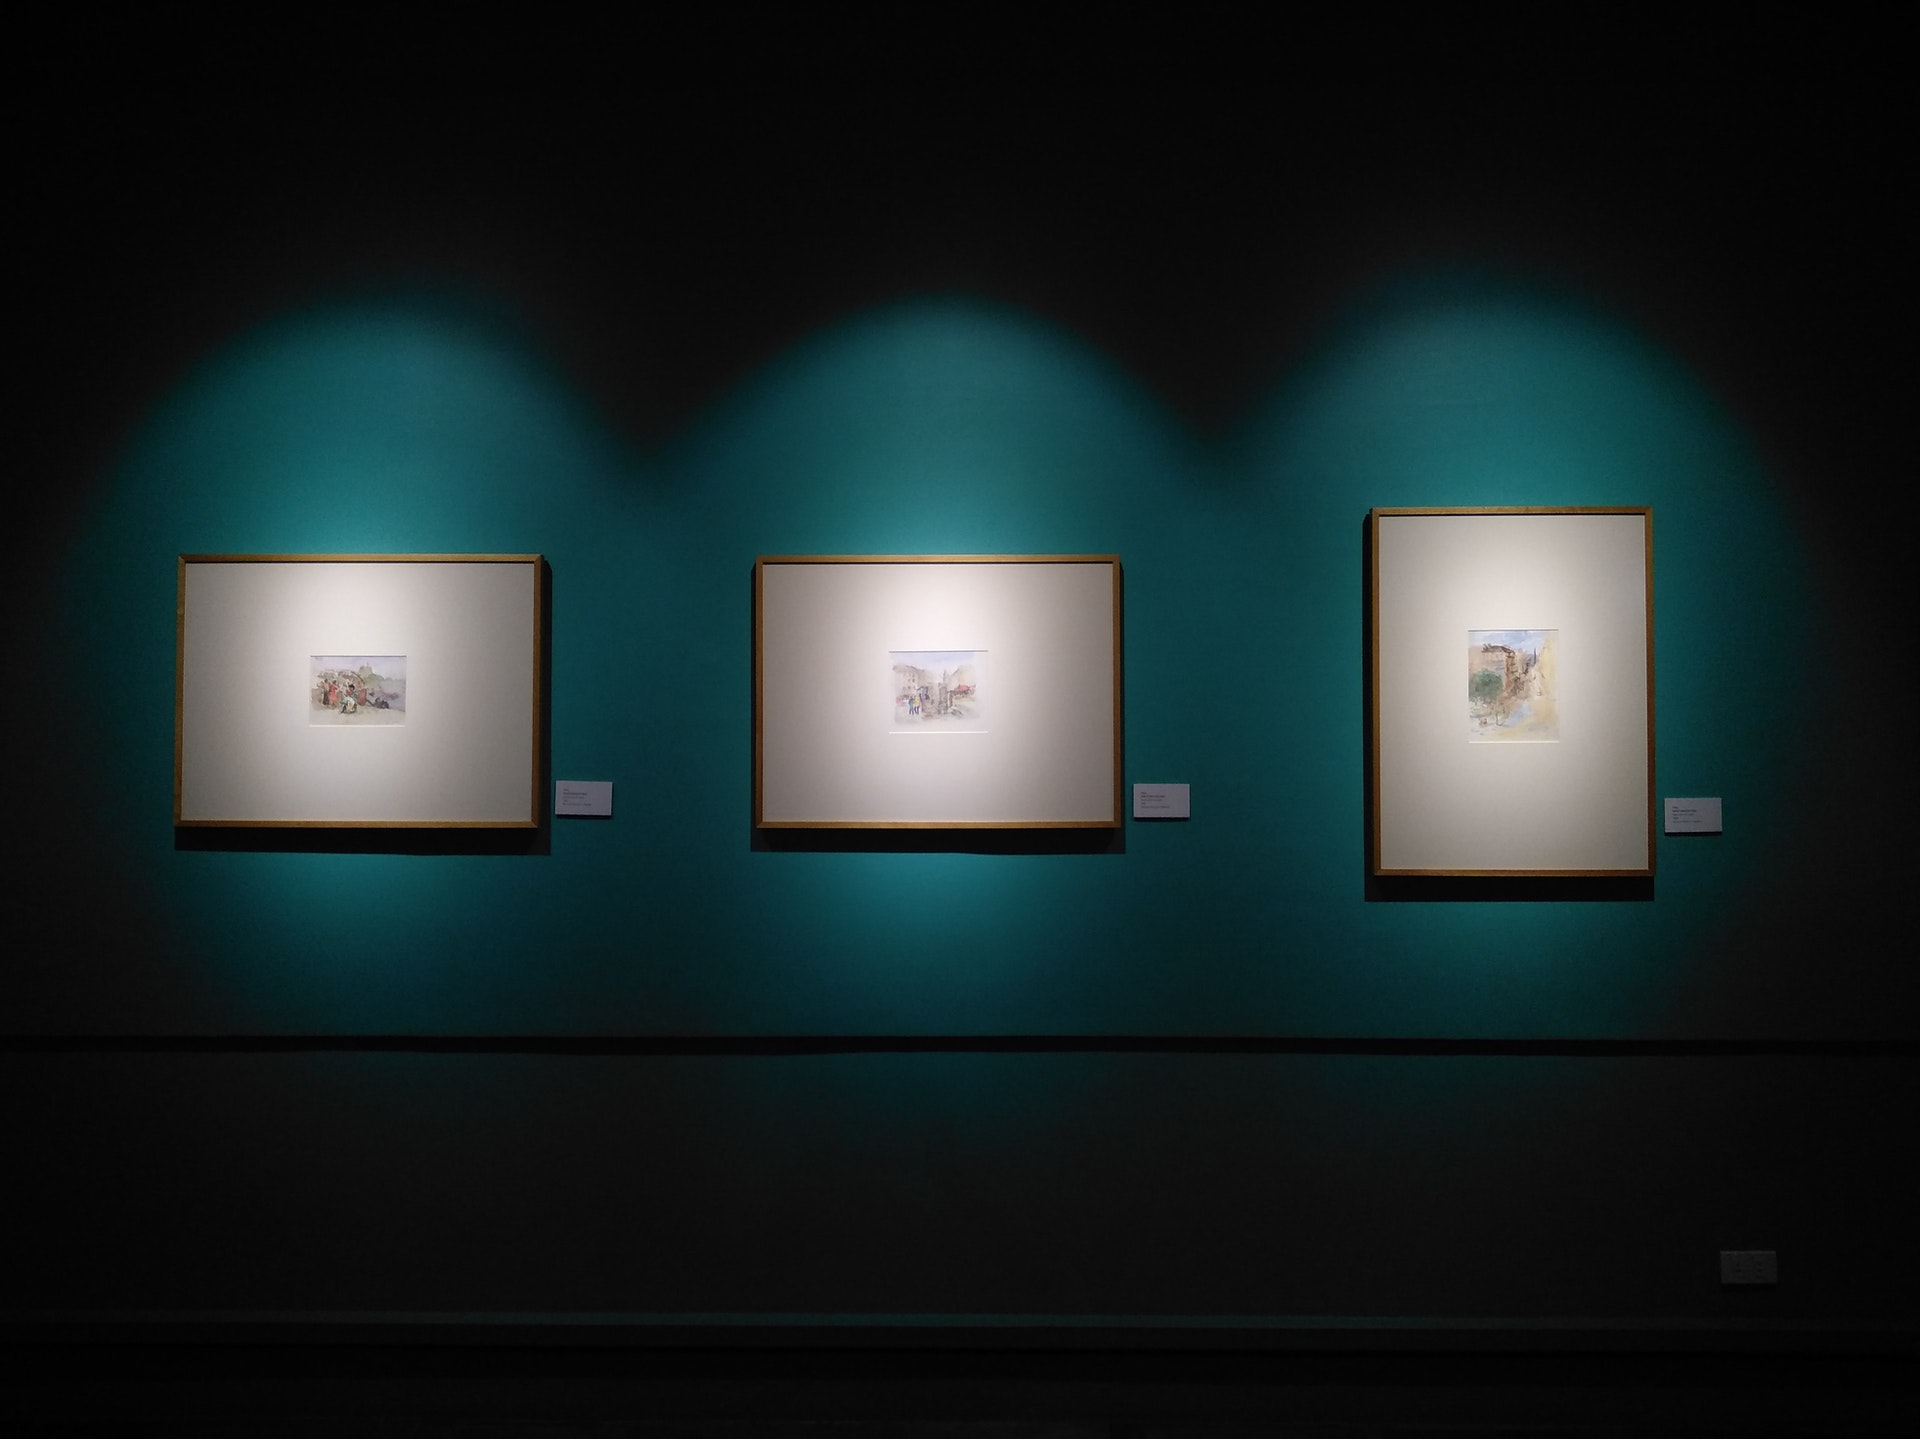 Wnętrze galerii przedstawiające 3 małe obrazy